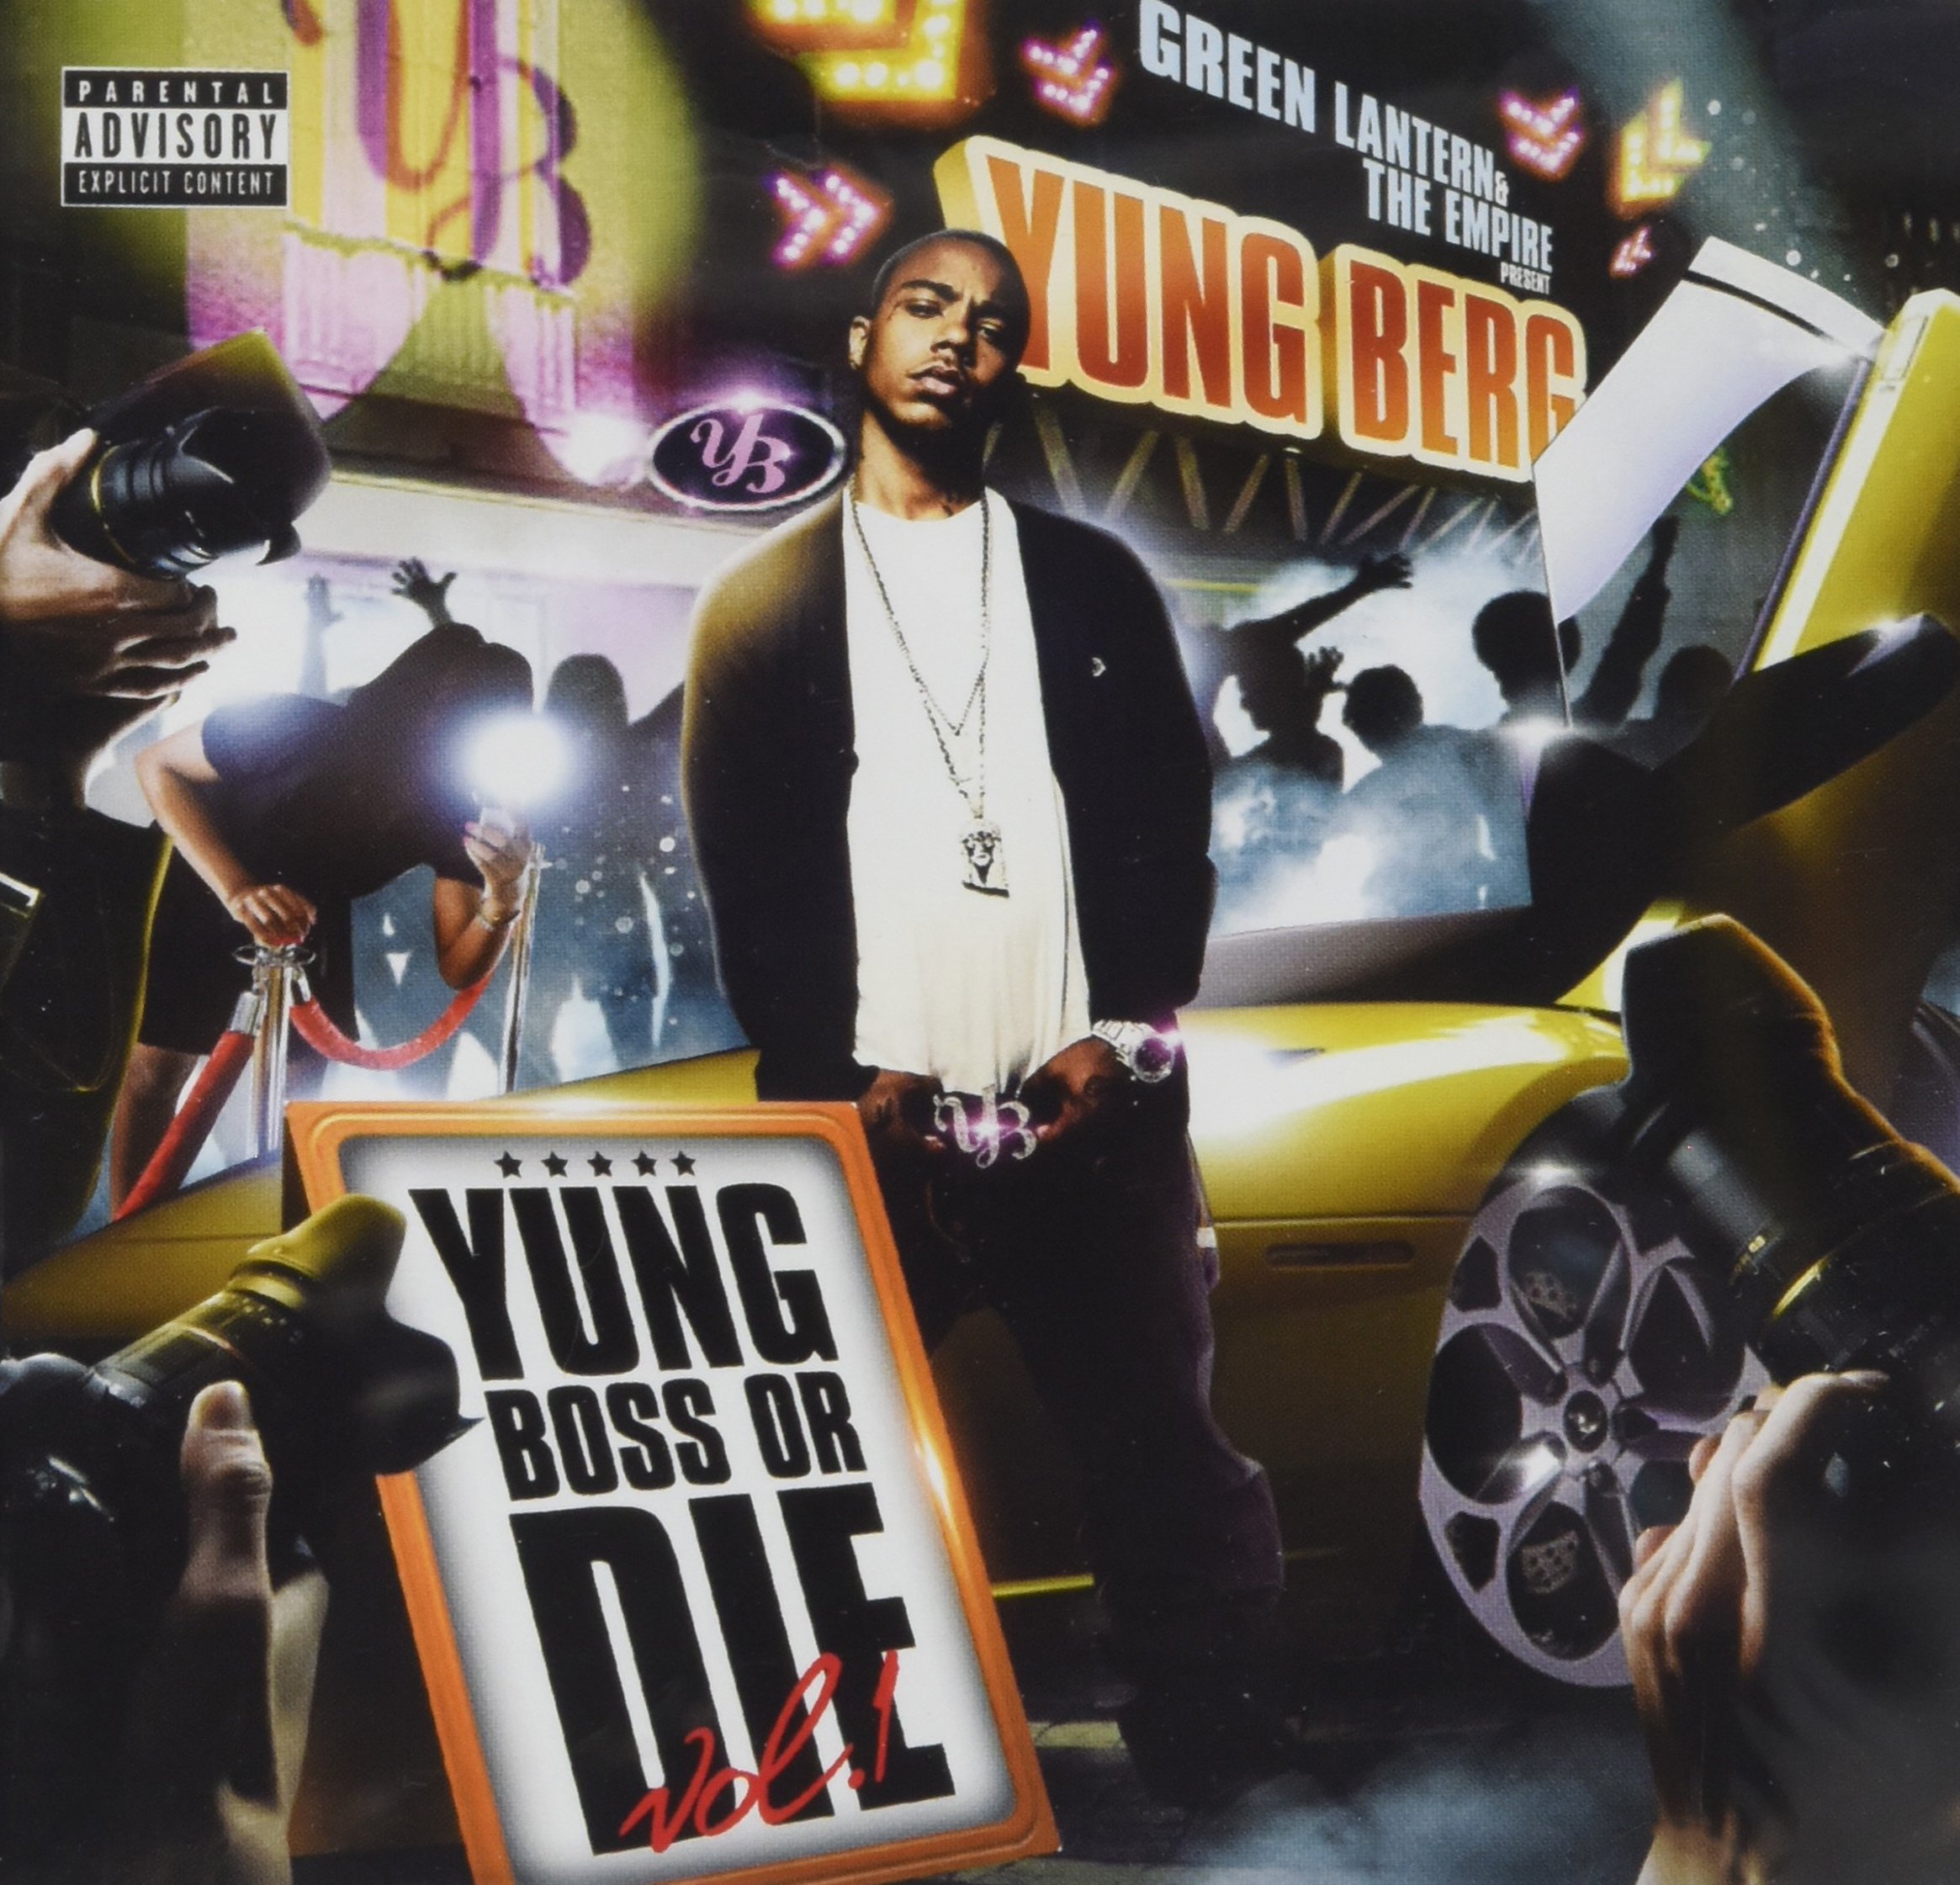 Yung Boss Or die